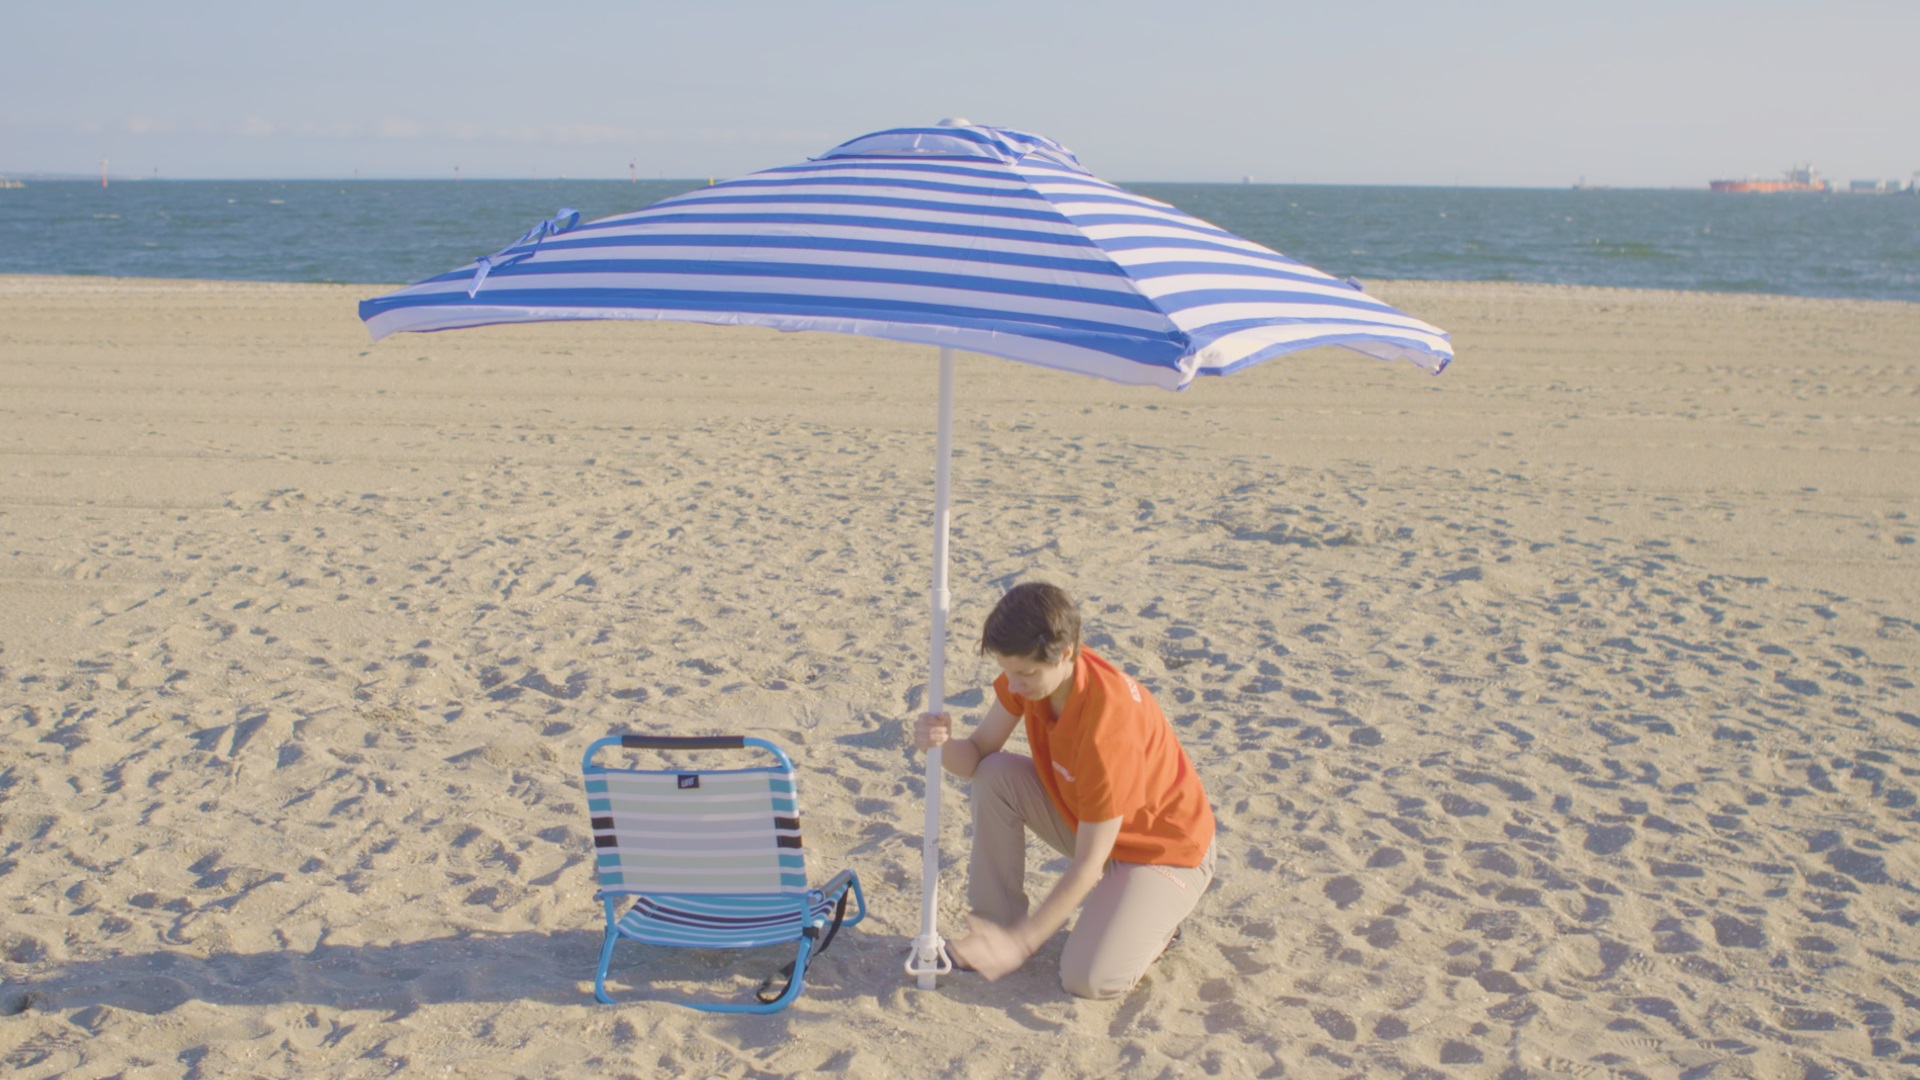 How To Choose A Beach Shelter & Storage - Beach Umbrella